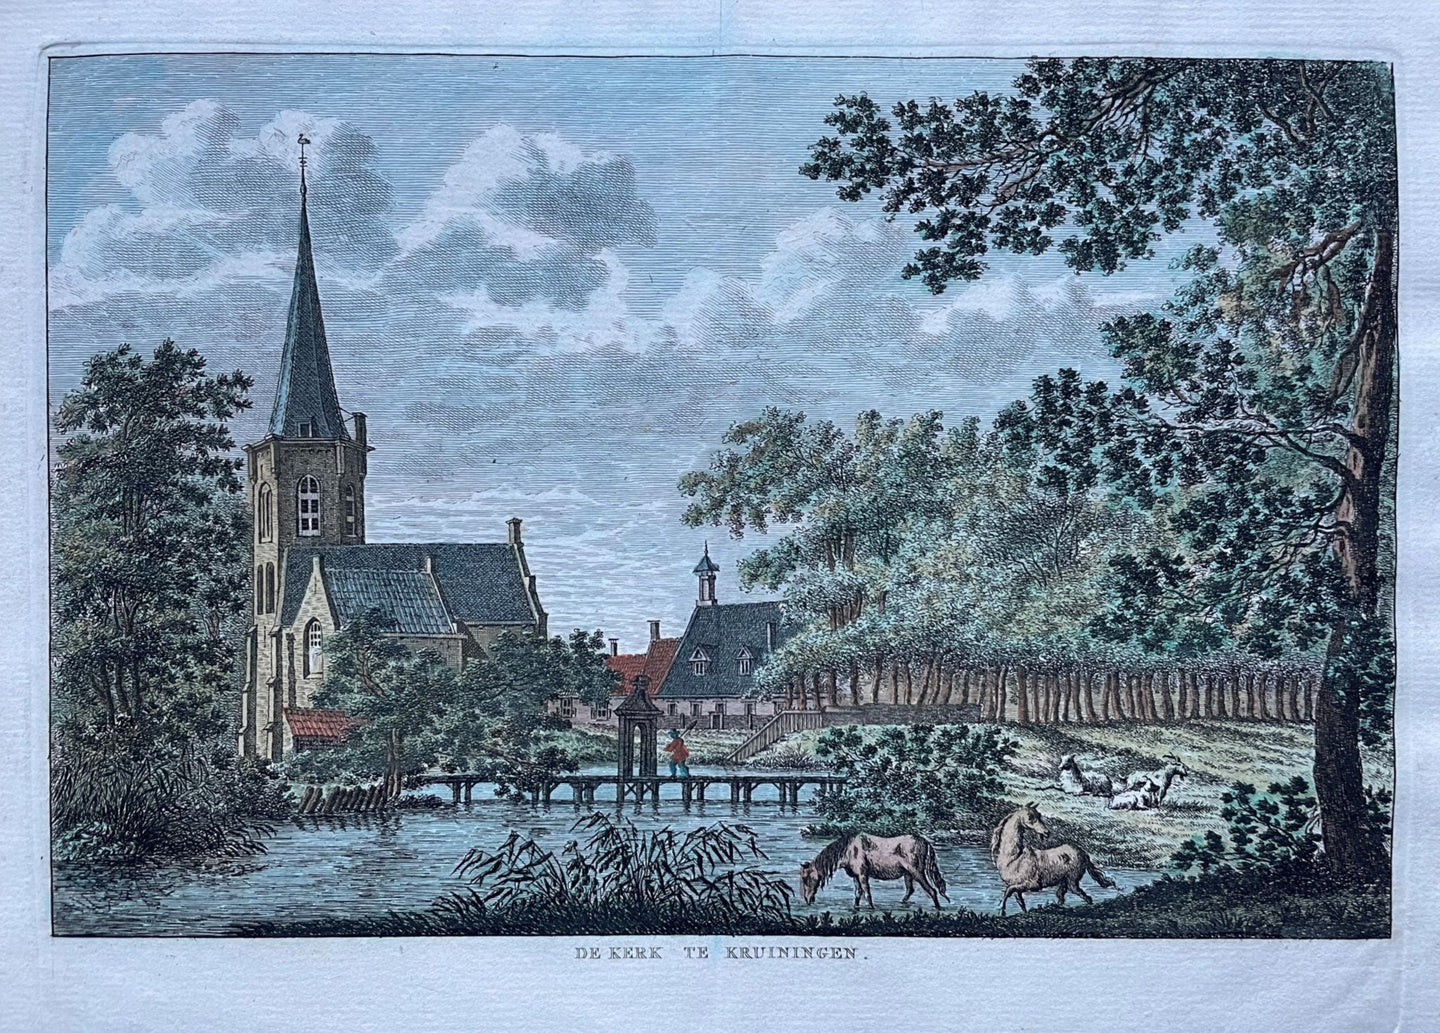 Kruiningen - KF Bendorp - 1793